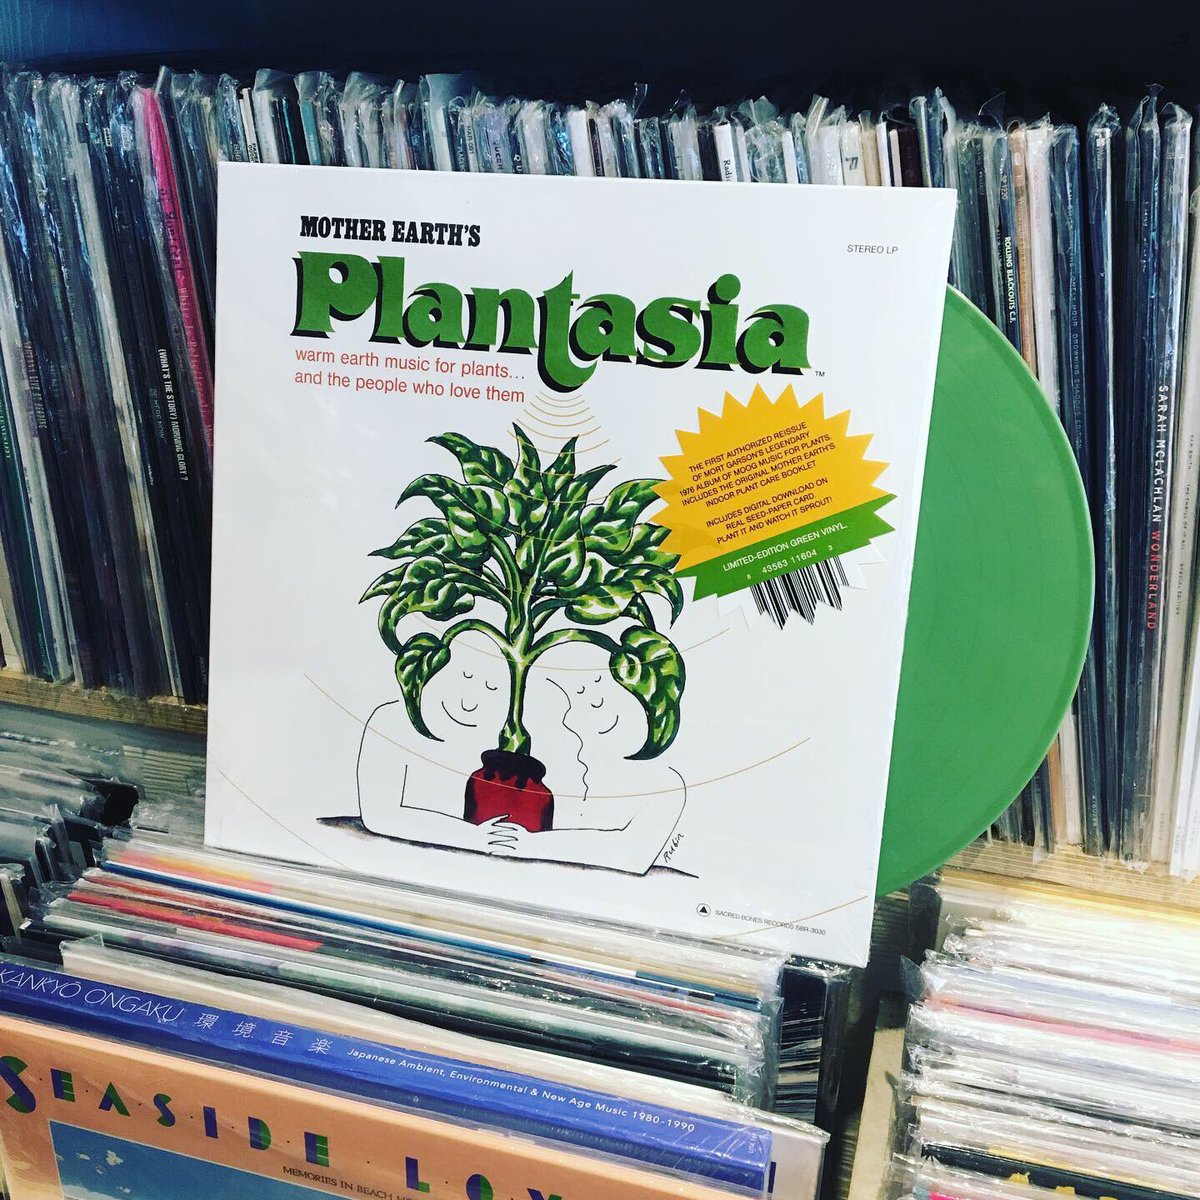 식물을 위한 앨범, 식물을 위한 따뜻한 음악... 이런 주제로 76년에 발표되어 호평도 받고 화제가 되었던 작품입니다. 식물들이 평가를 할 수는 없을테고 사람 귀에 좋게 들렸다는 얘기죠. #MortGarson 의 무그 연주 앨범 Mother Earth’s Plantasia가 드디어 최초로! 공식 재발매반이 나왔습니다.